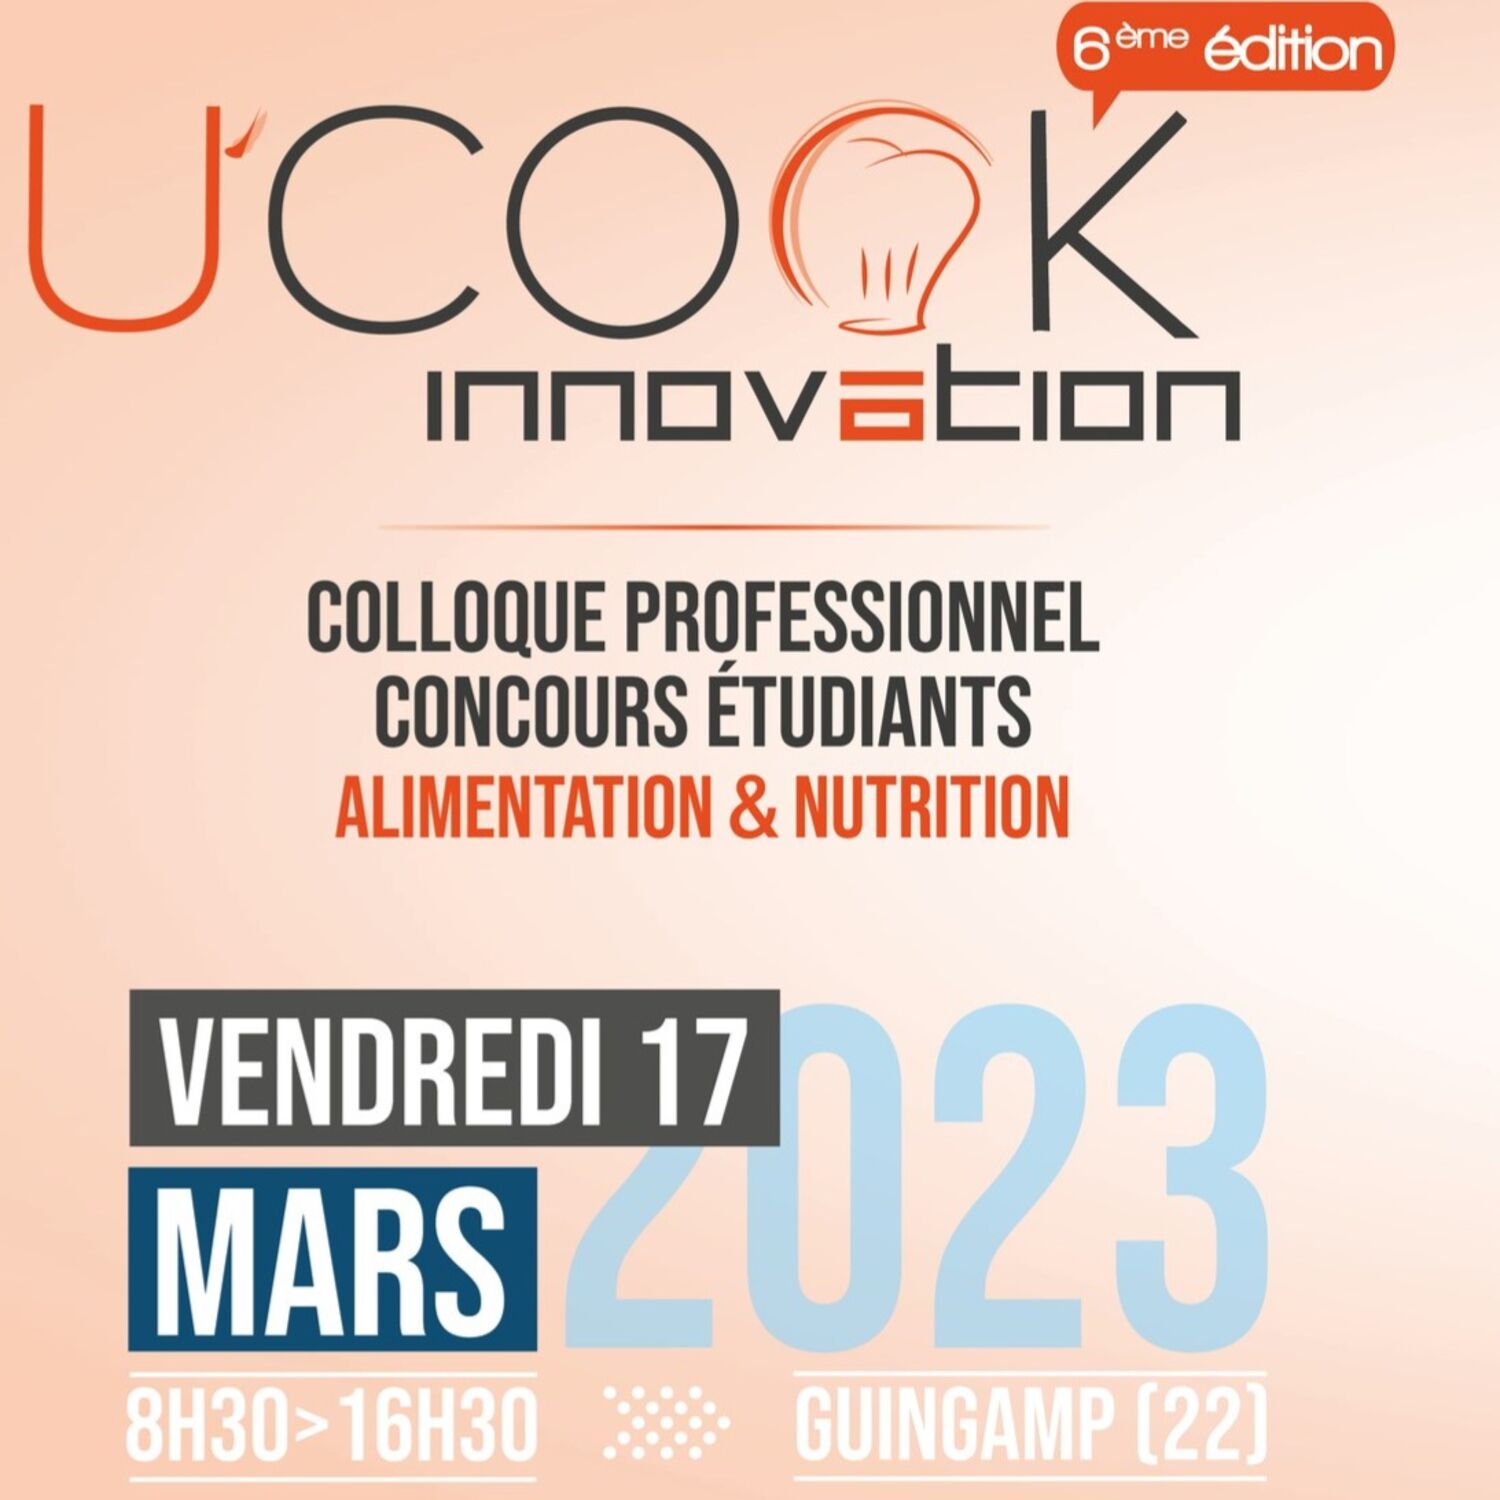 U'Cook Innovation - 6ème édition, ce vendredi 17 Mars à Guingamp